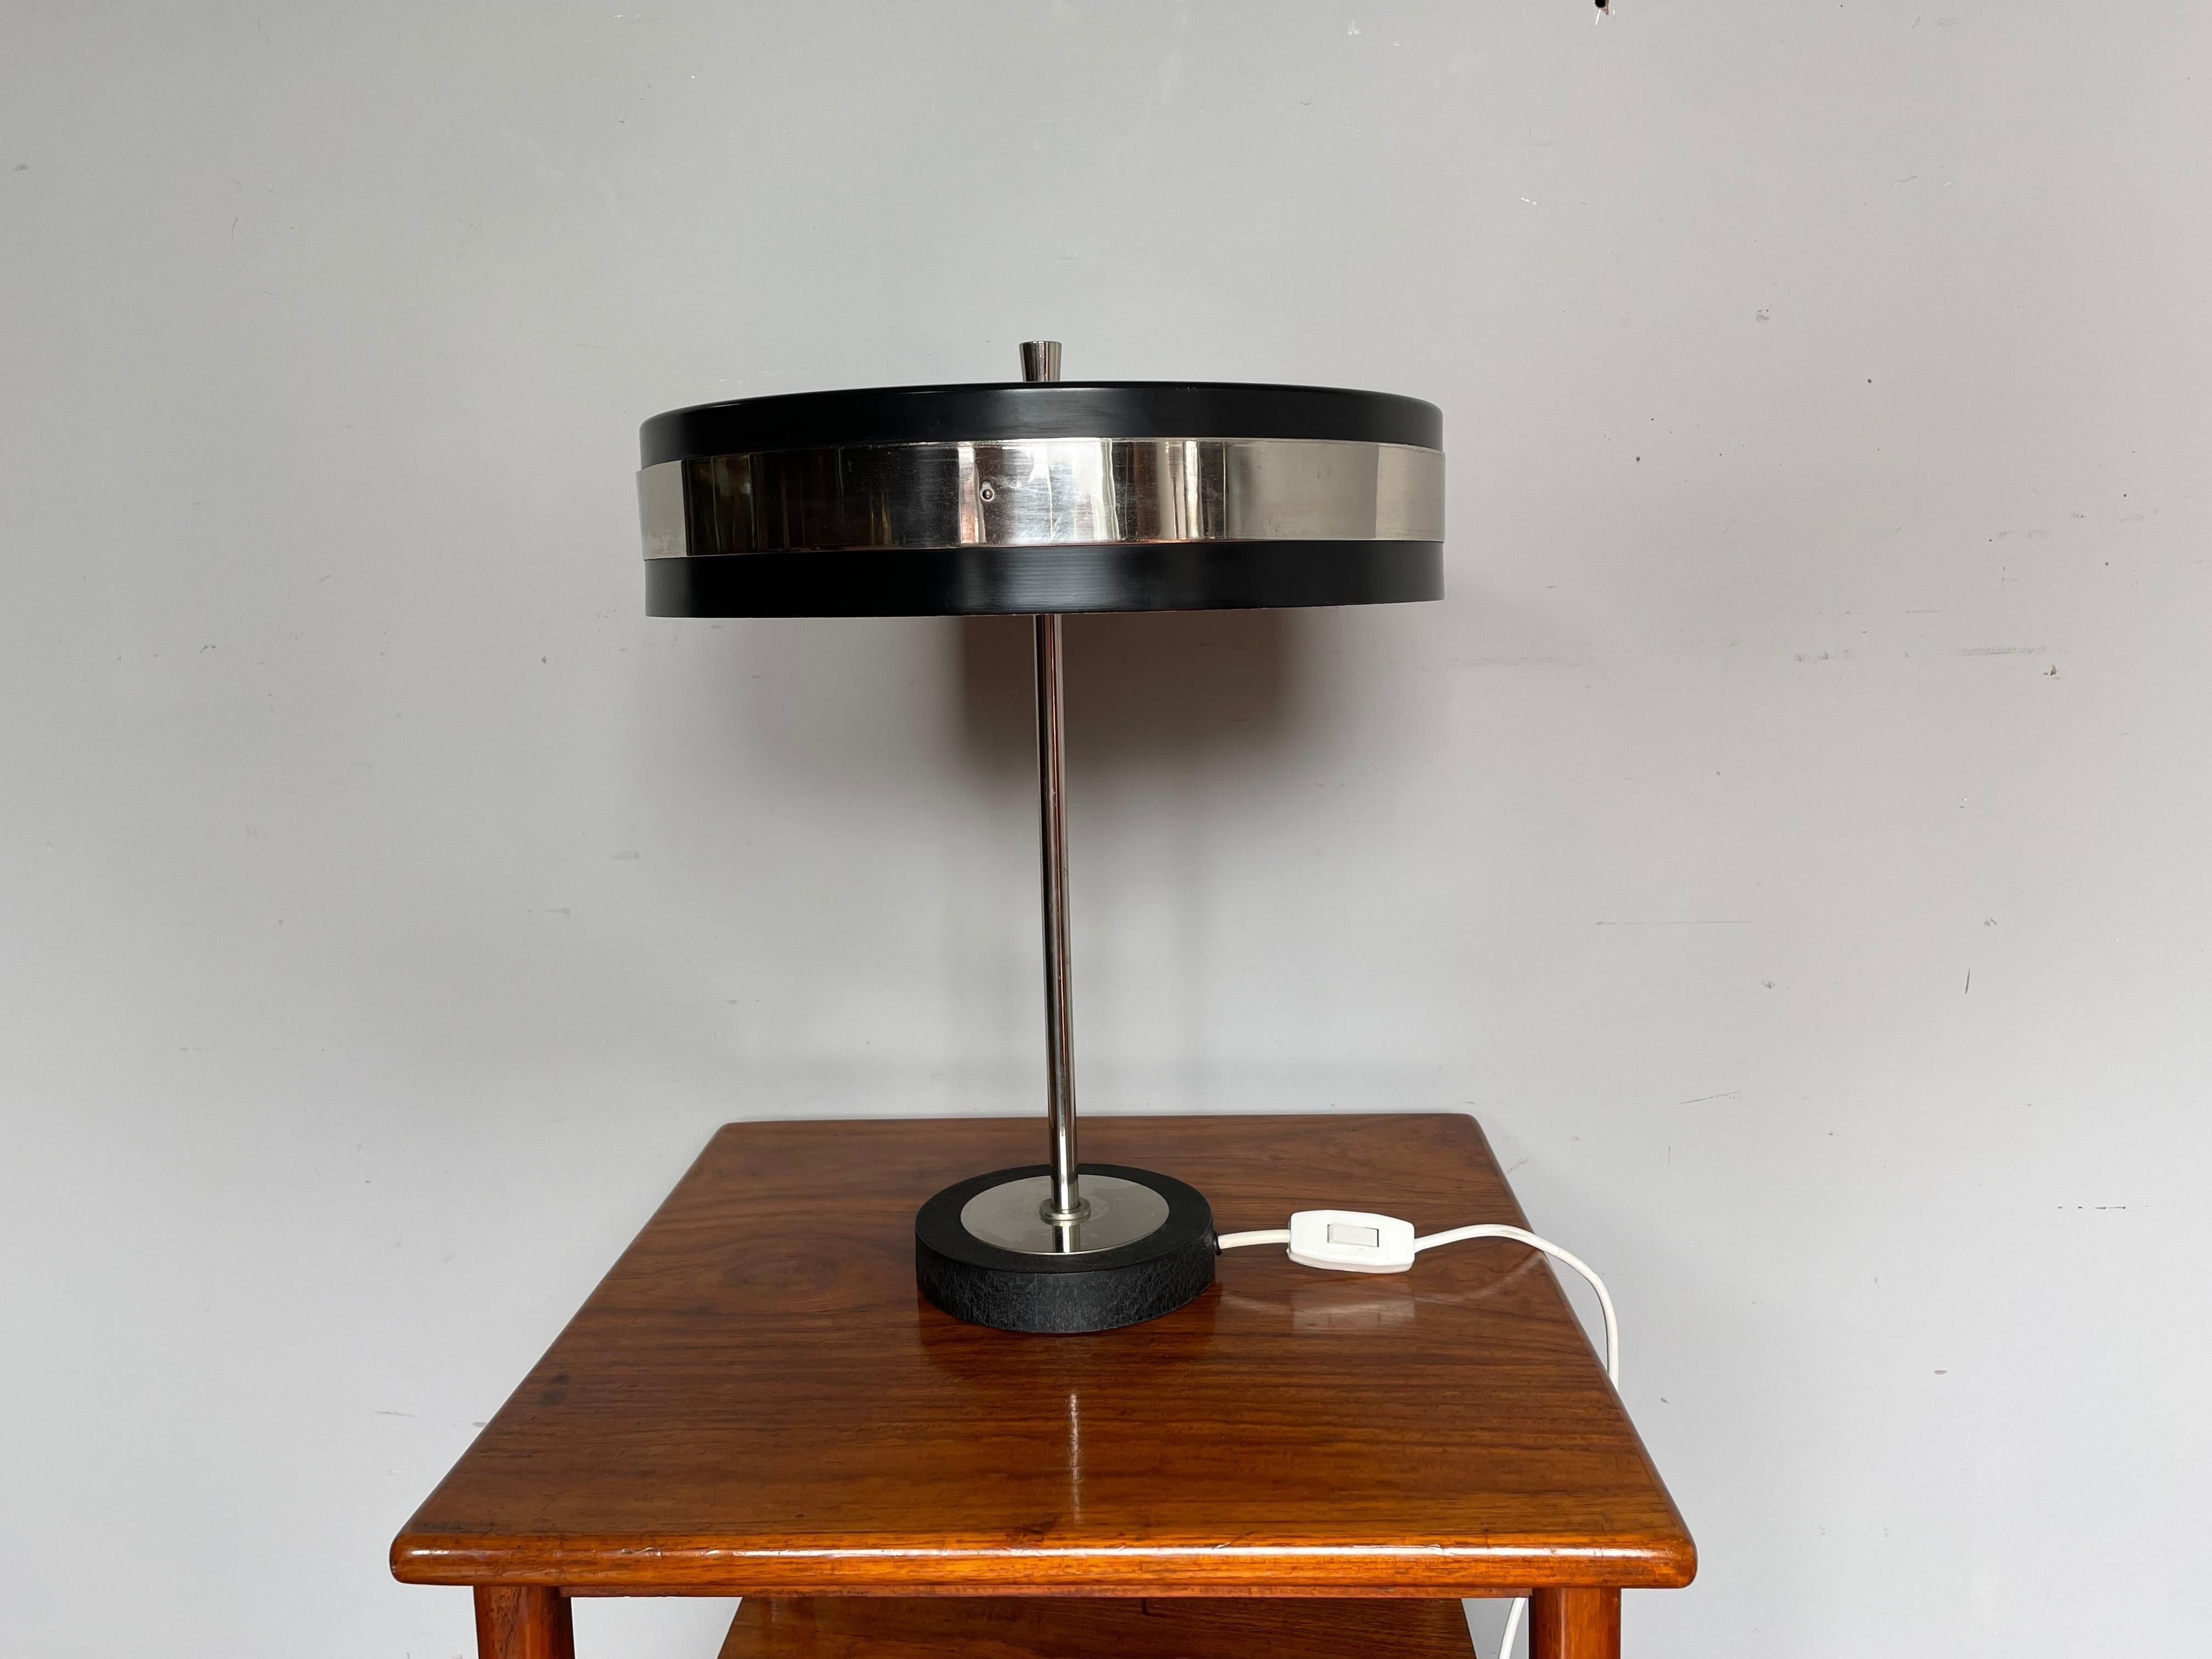 Stilvolle und seltene moderne Schreibtischlampe aus der Mitte des Jahrhunderts im Stil von Louis Kalff.

Sowohl im übertragenen als auch im wörtlichen Sinne ist diese Leuchte aus den 1950er- oder 60er-Jahren perfekt geeignet, um Licht in Ihr